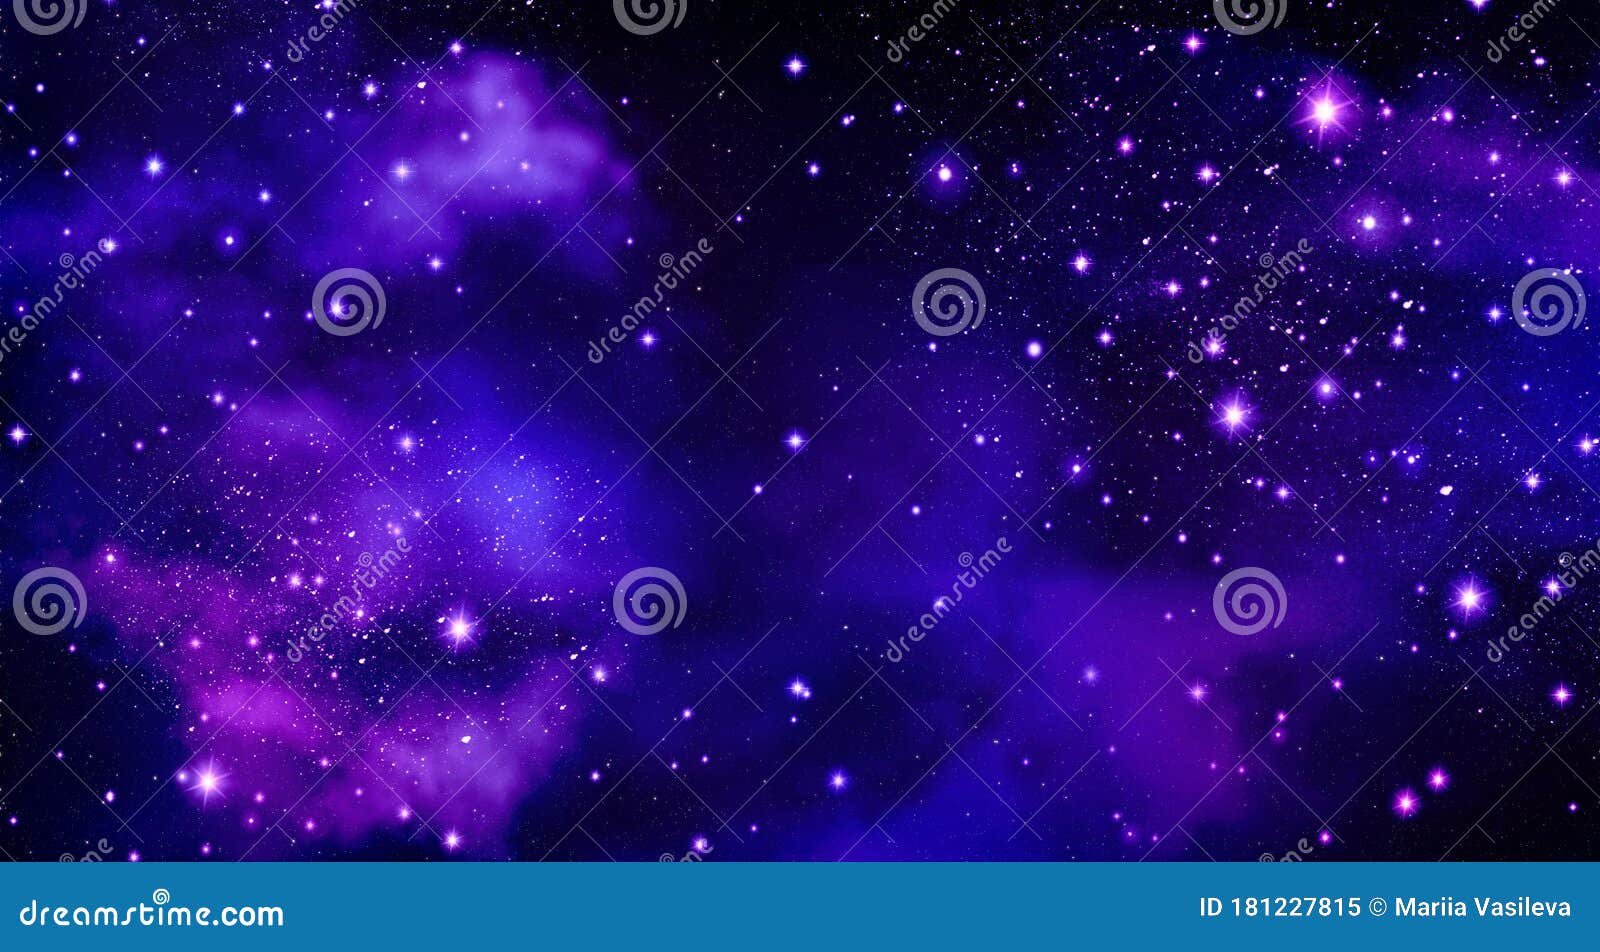 星空背景 星云 空间 宇宙 星群 闪光 星 蓝 黑 紫 天文库存例证 插画包括有星空背景 星云 空间 宇宙 星群 闪光 星 蓝 黑 紫 天文